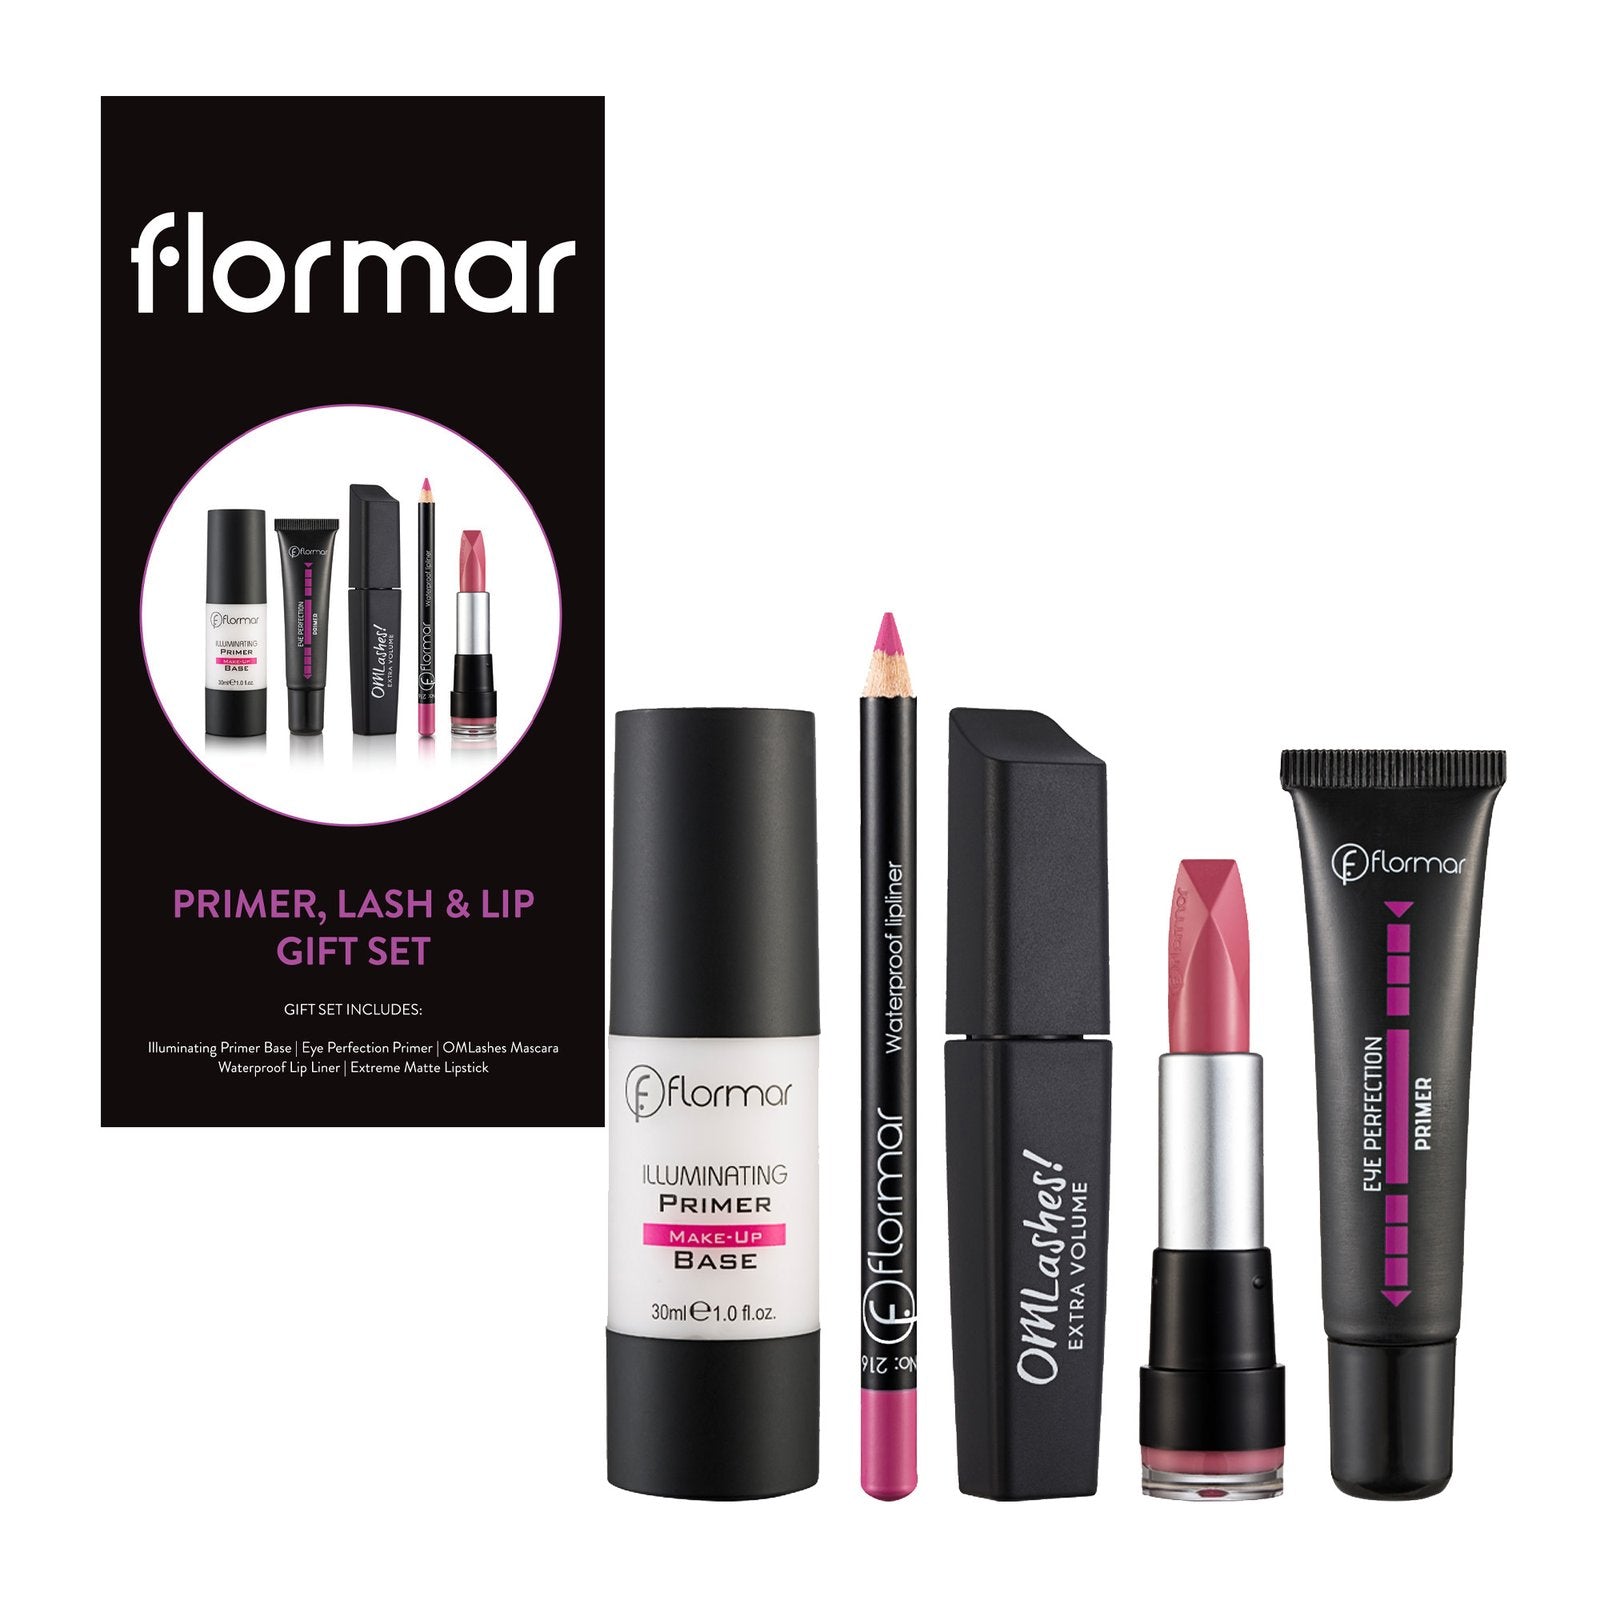 Flormar Primer, Lash & Lip Gift Set